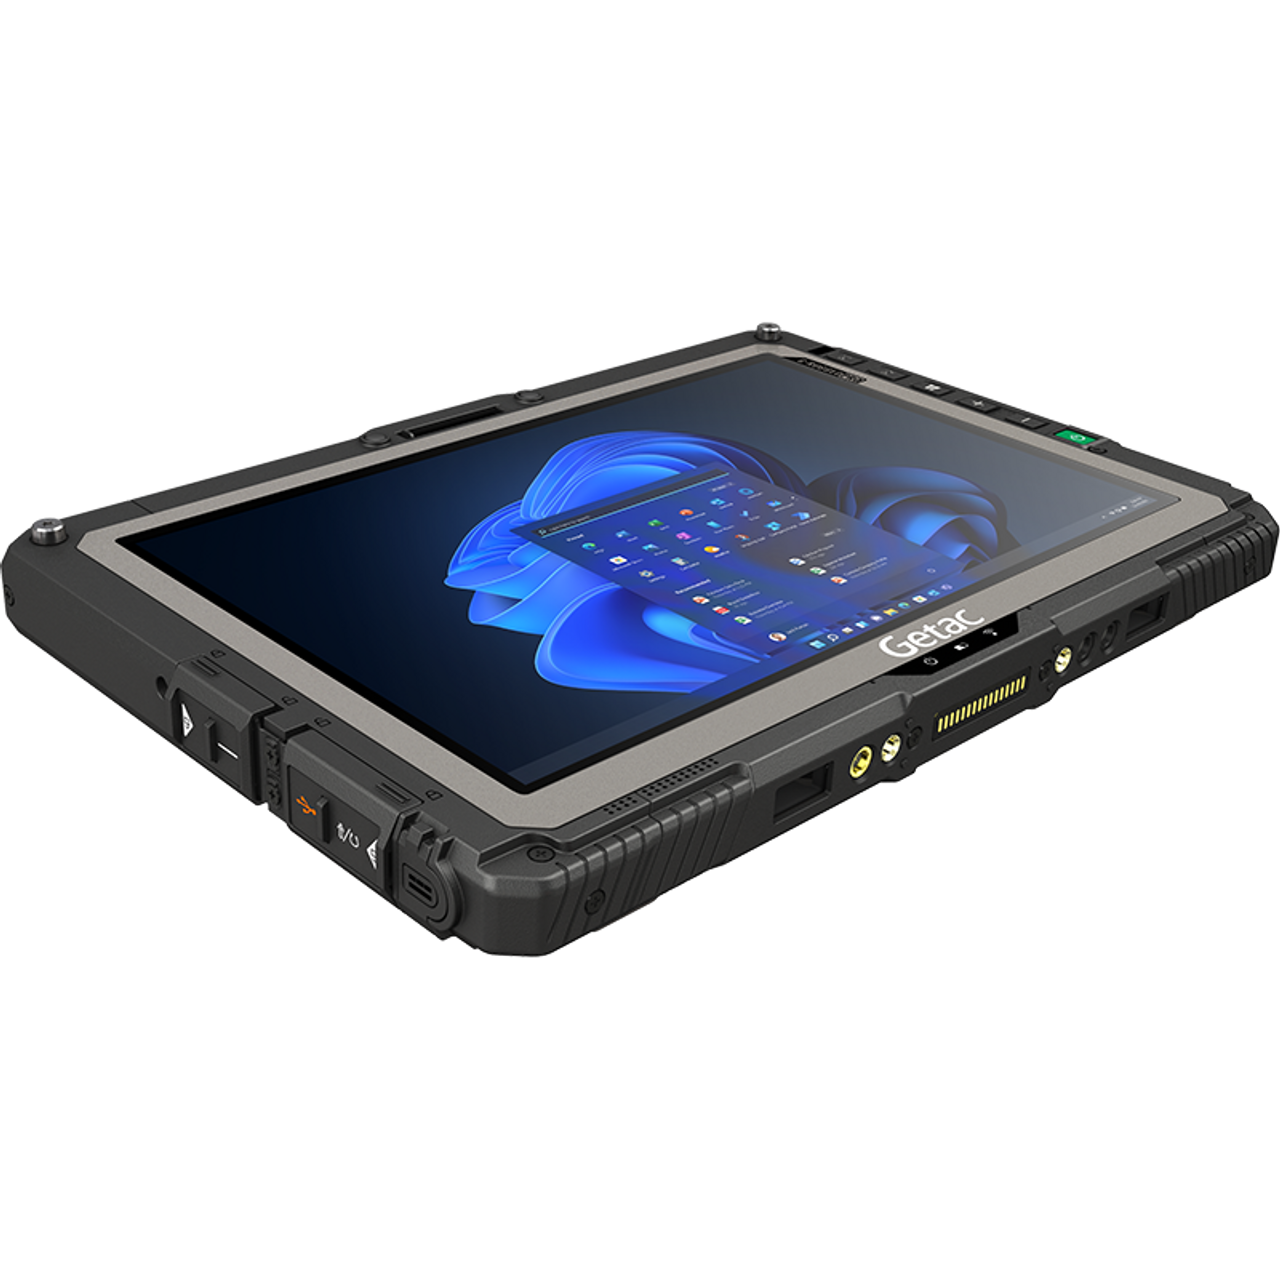 Getac UX10 G2 Fully Rugged 10.1in Tablet, Intel Core i5-10210U Processor, W/Windows Hello Webcam, Windows 10 Pro+8GB RAM, 256GB PCIe SSD, Sunlight Readable FHD LCD+Touch+Digitizer+Rear Cam, WiFi+BT, 3 Years B2B Warranty